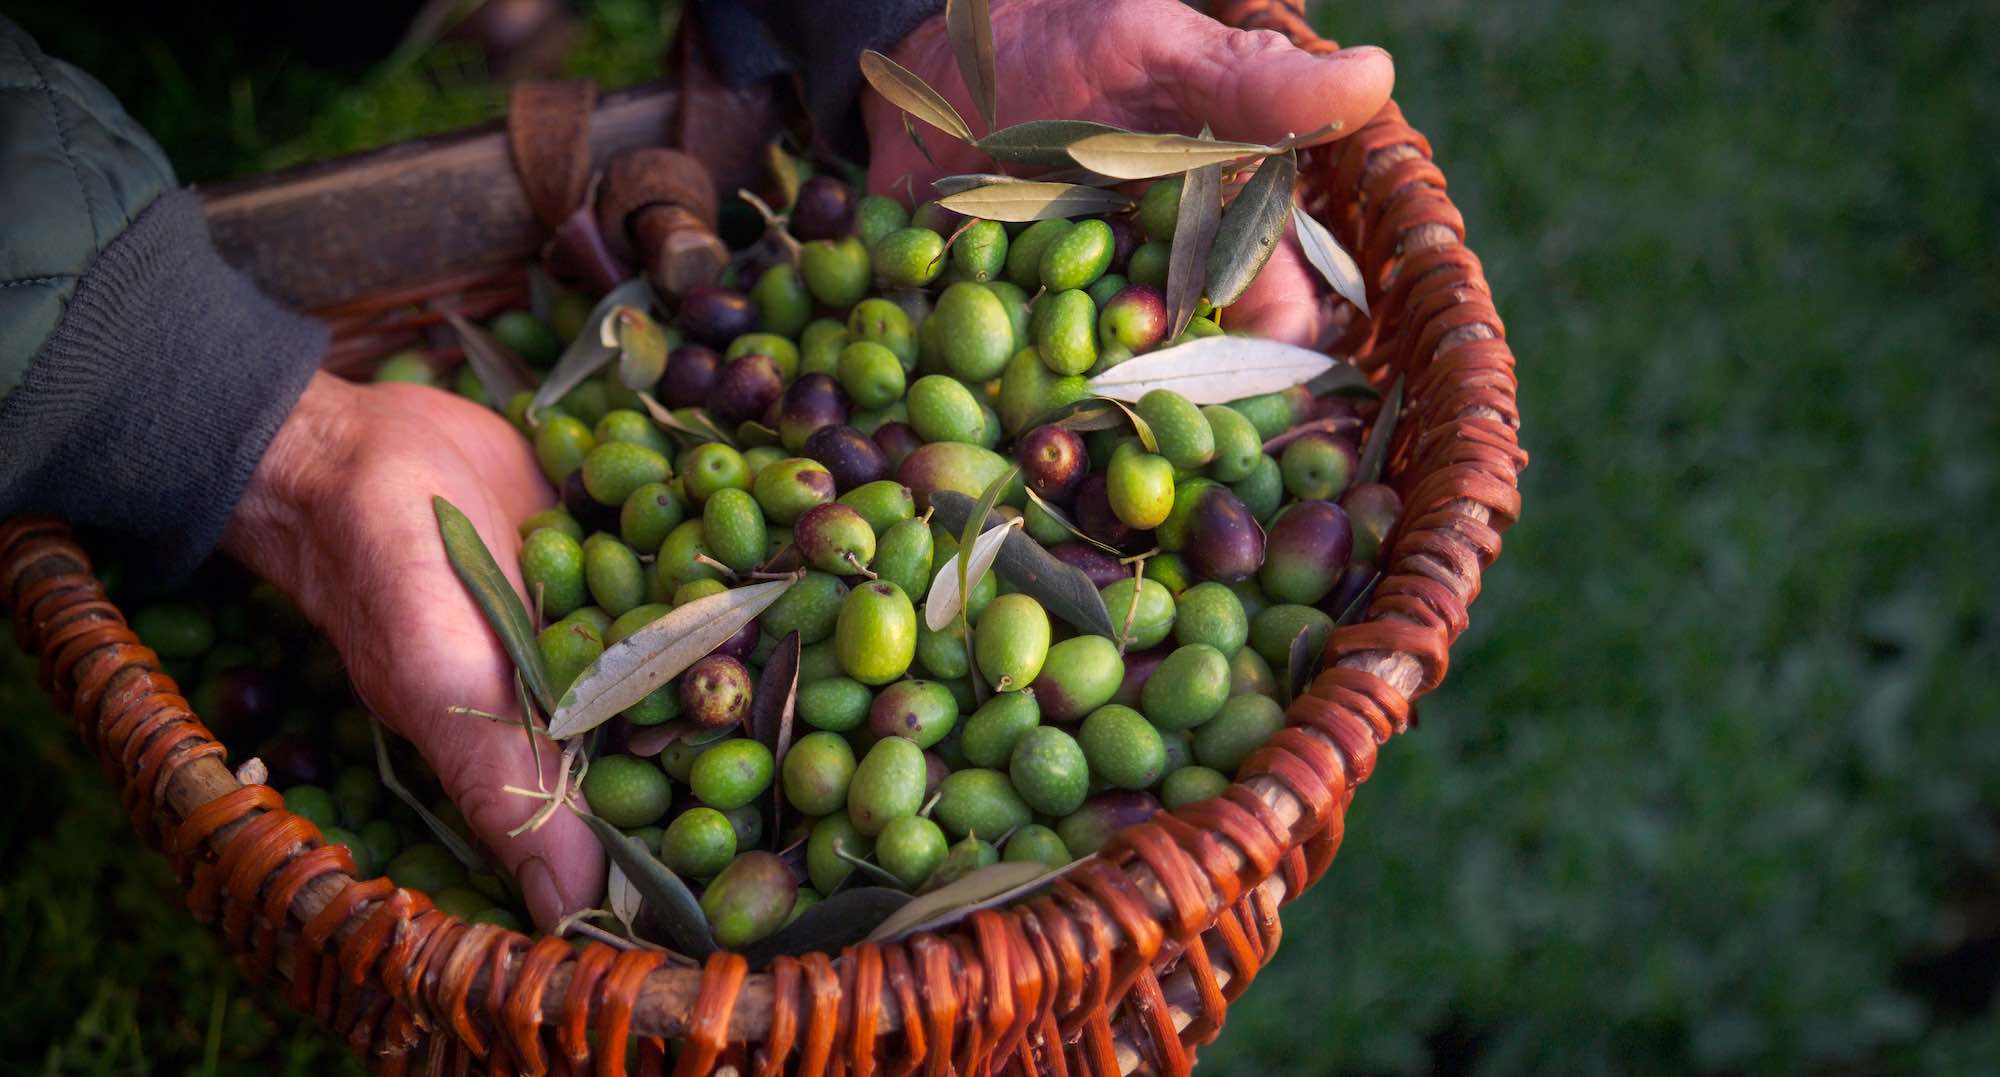 Il contadino mostra una manciata di olive toscane mature raccolte